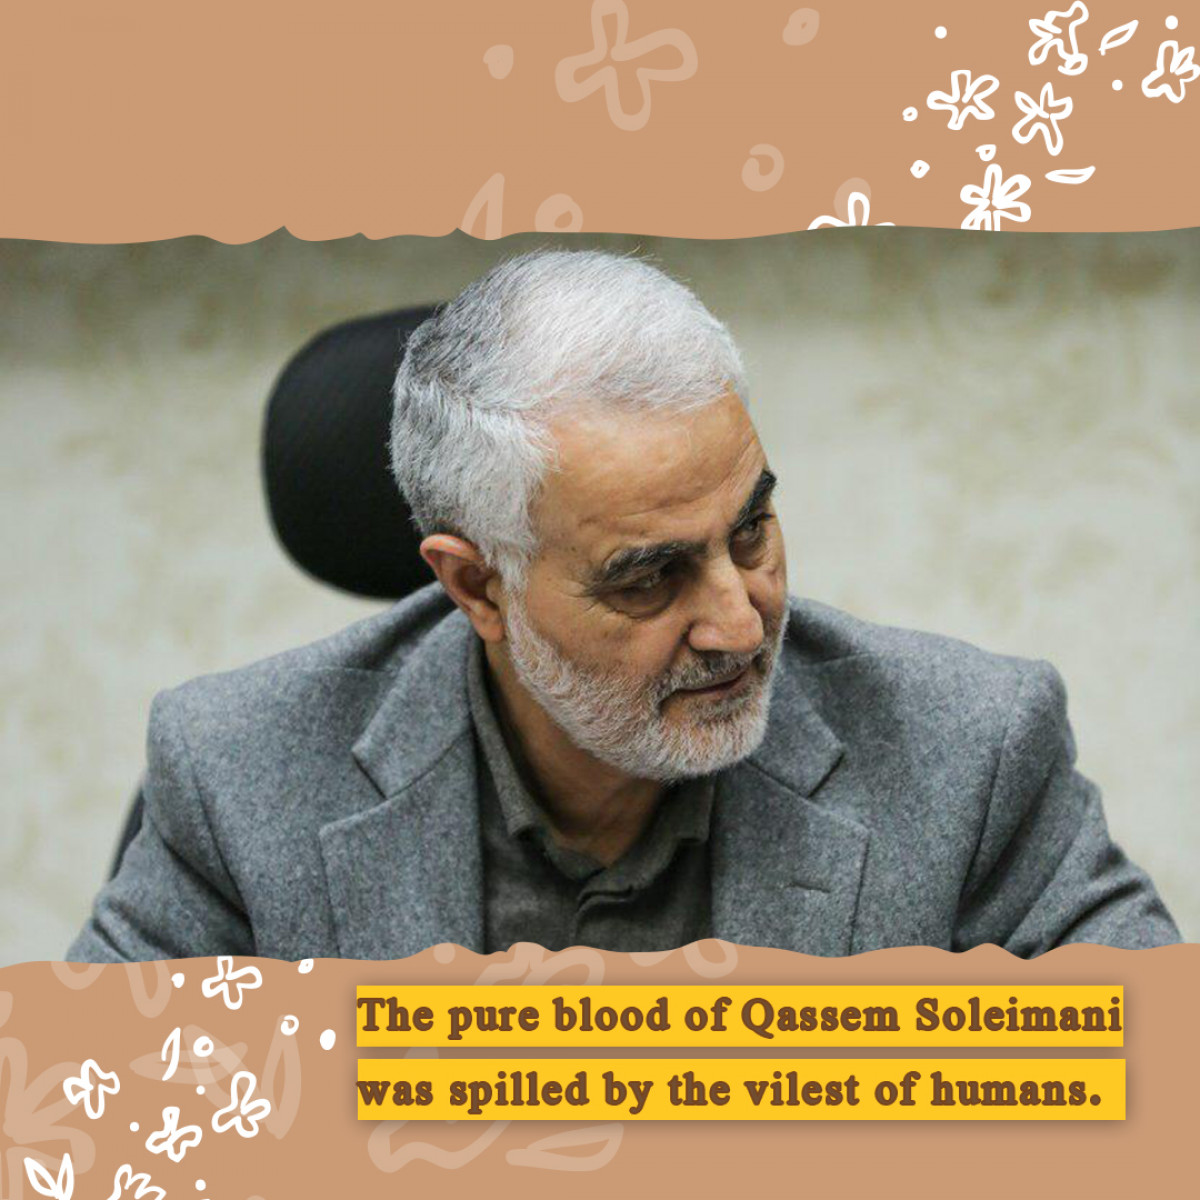 The pure blood of Qassem Soleimani